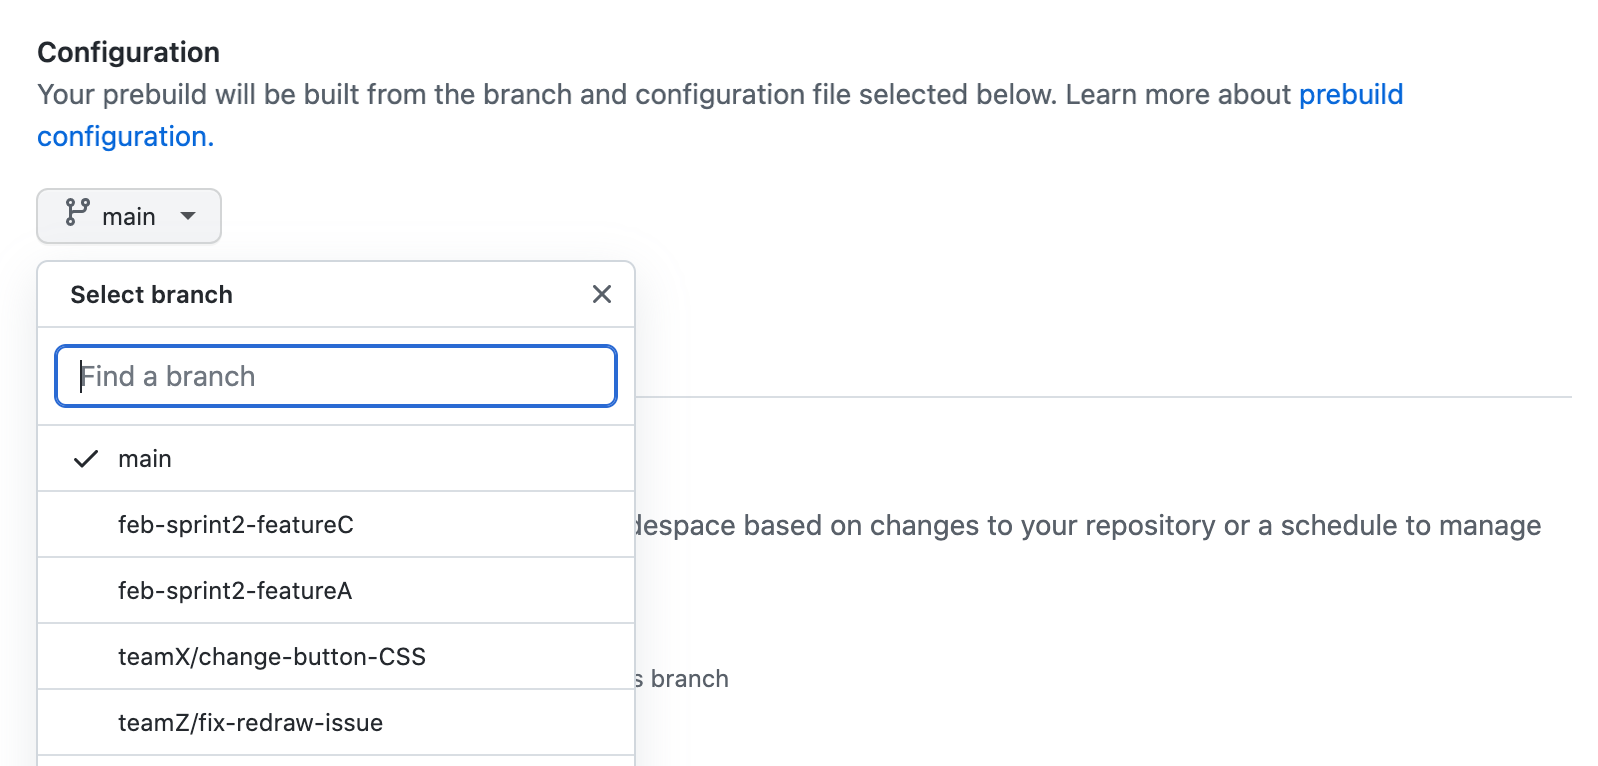 Captura de tela das definições de "Configuração" para uma predefinição com um menu suspenso listando os branches a serem selecionados. O branch "principal" está selecionado no momento.